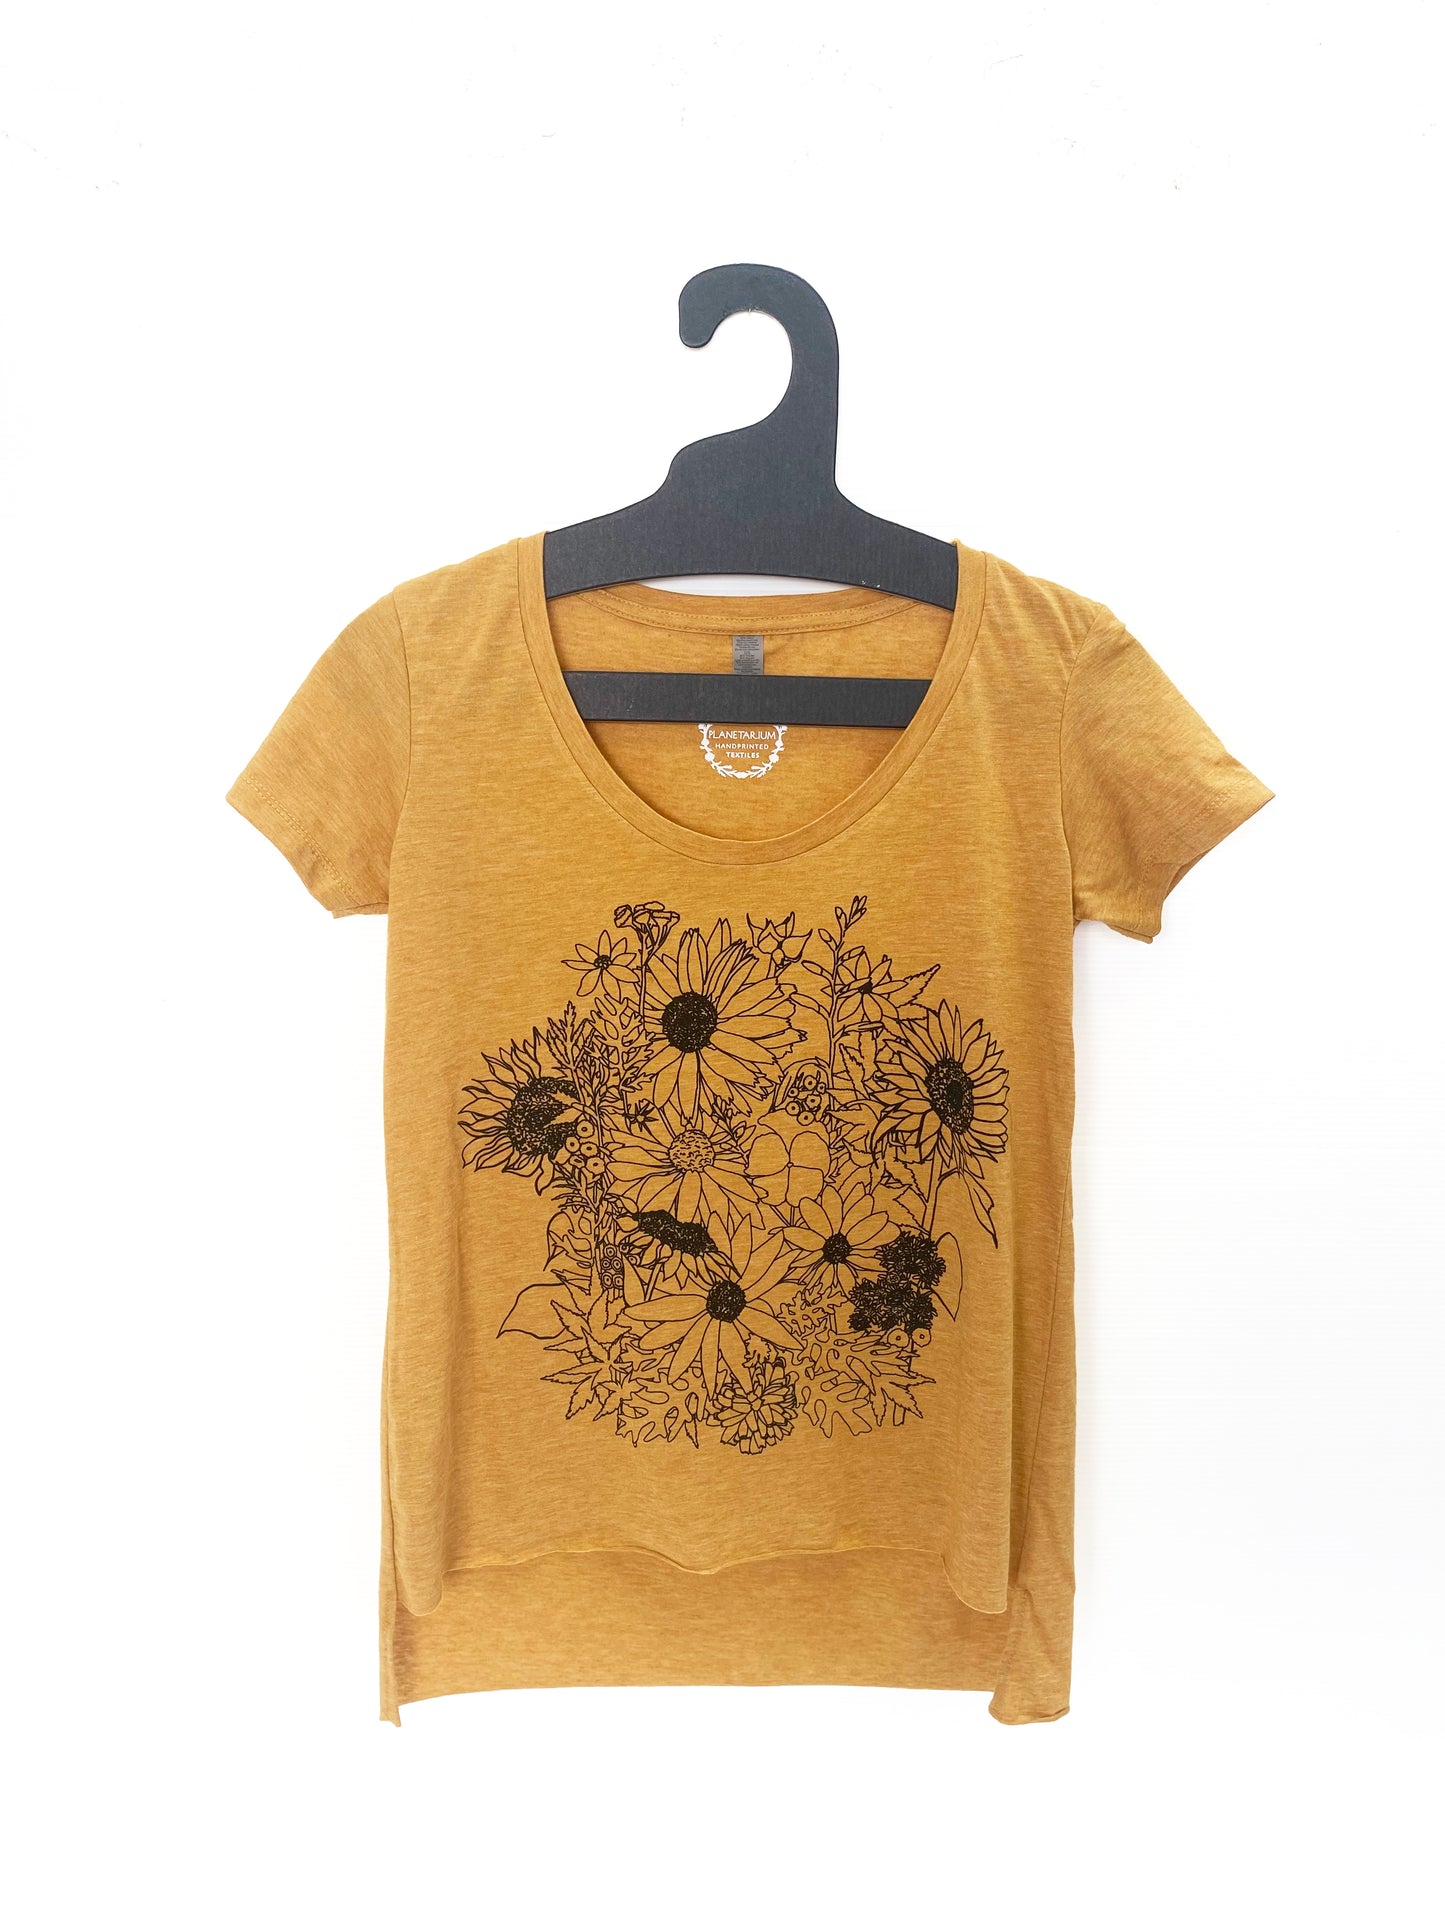 Golden Sunflowers T-shirt